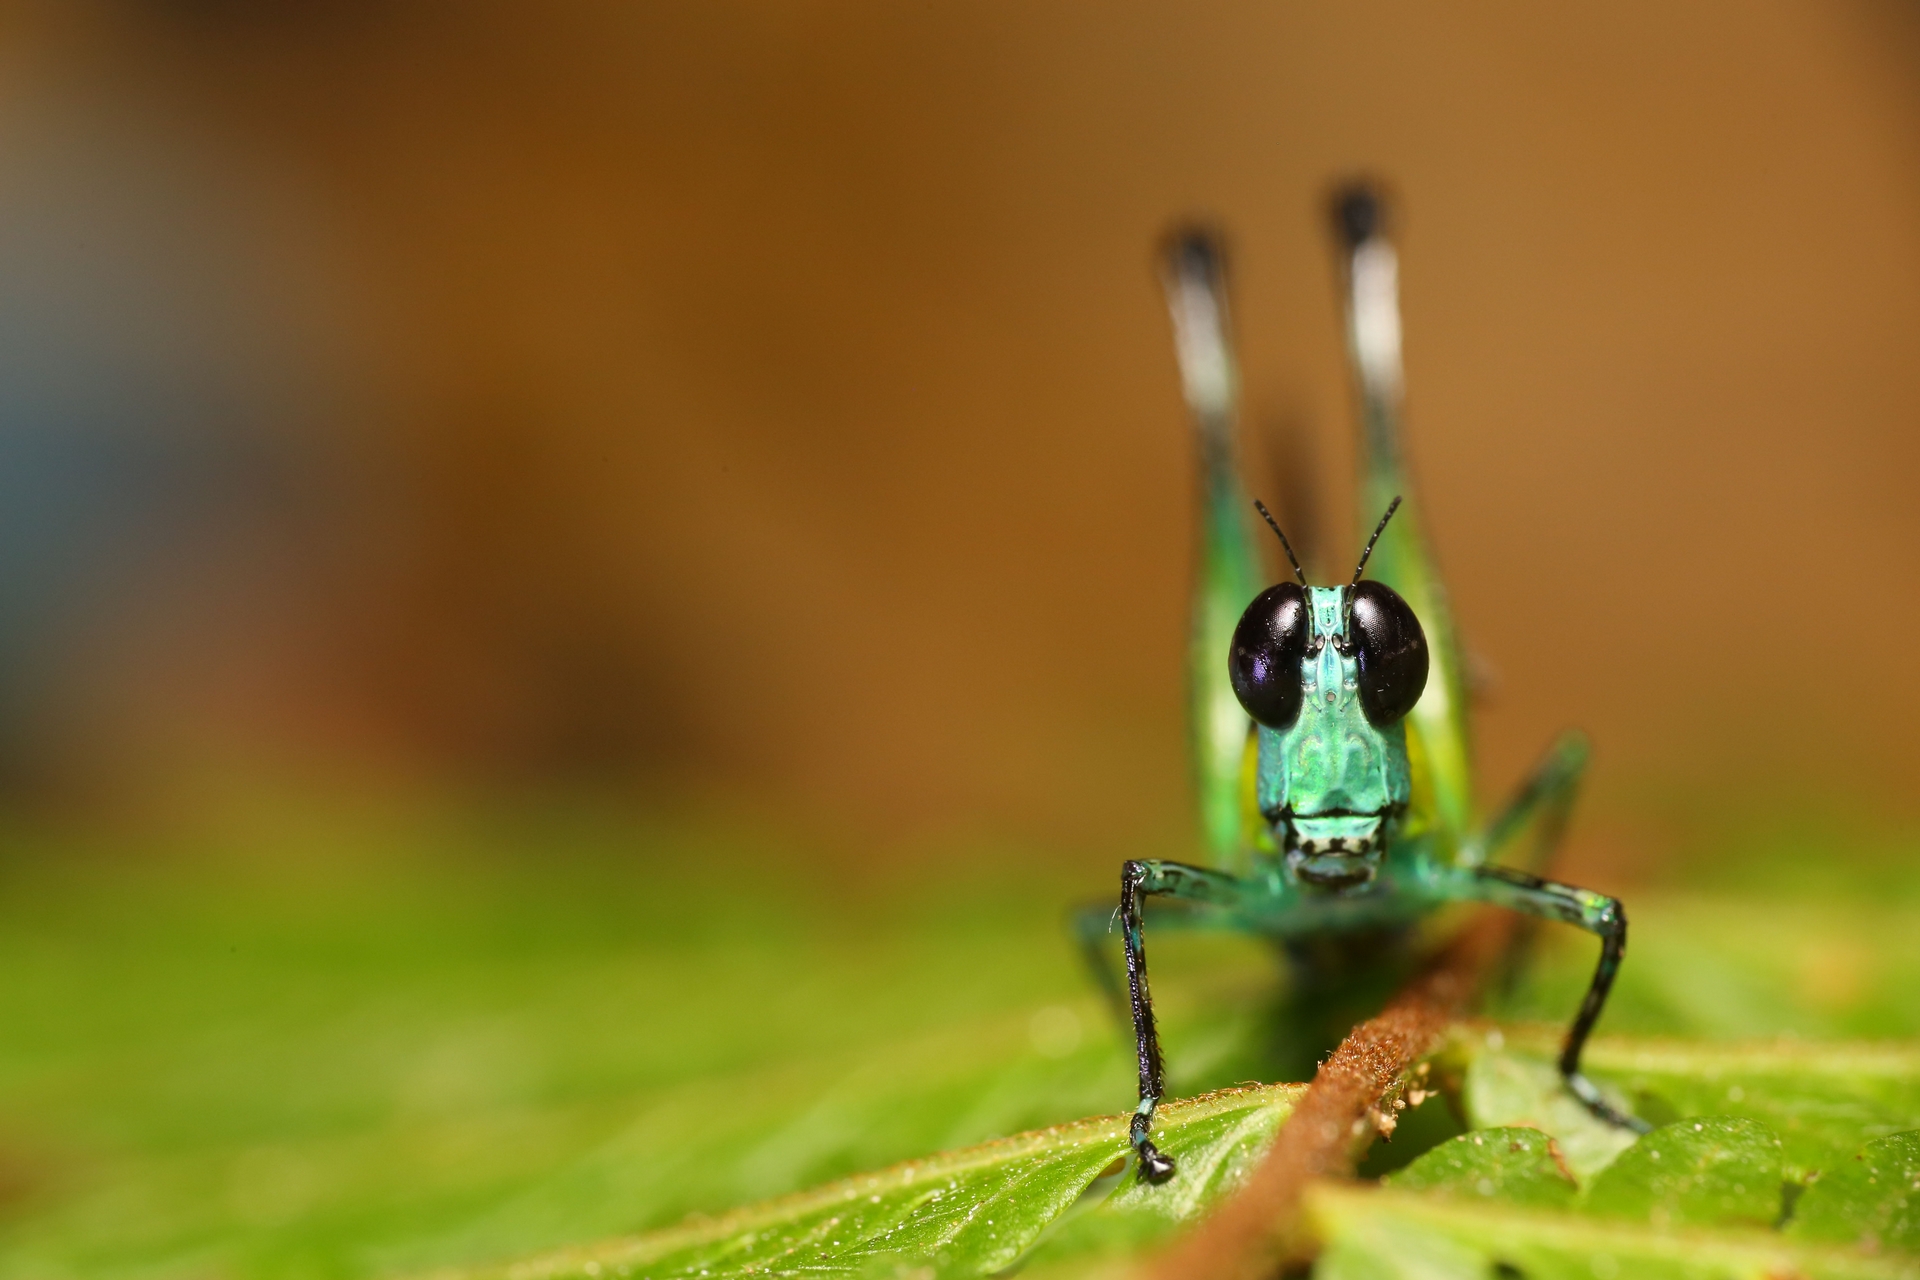 雨林中願意面對面談心的昆蟲。（馬來西亞雨林 突眼蝗蟲），攝影｜黃仕傑 